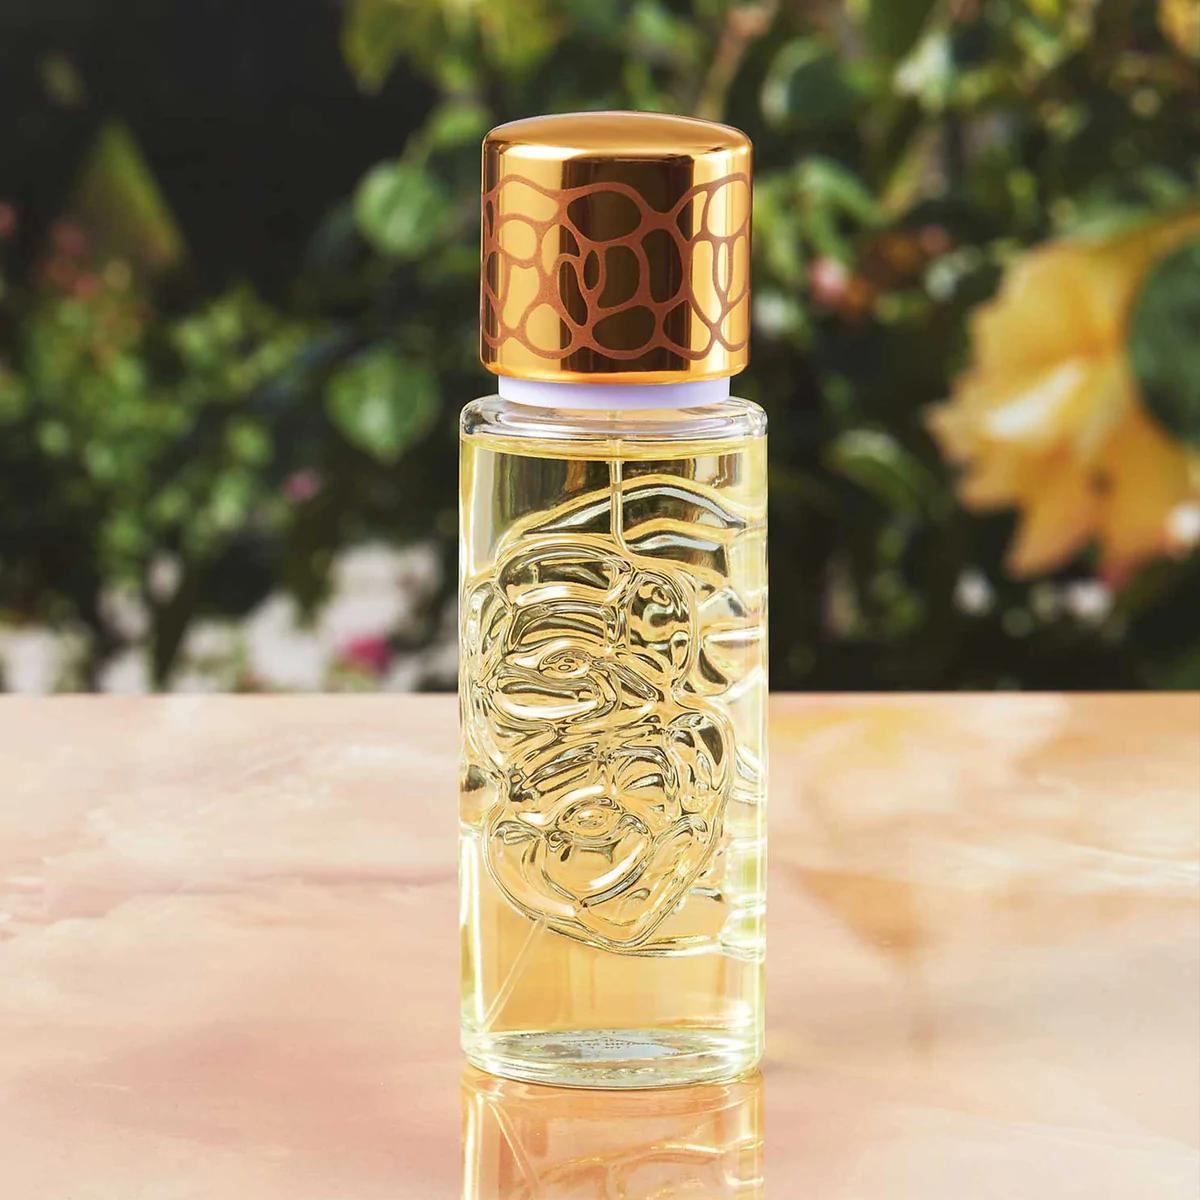 Houbigant - Quelques Fleurs Jardin Secret ambiance | Perfume Lounge